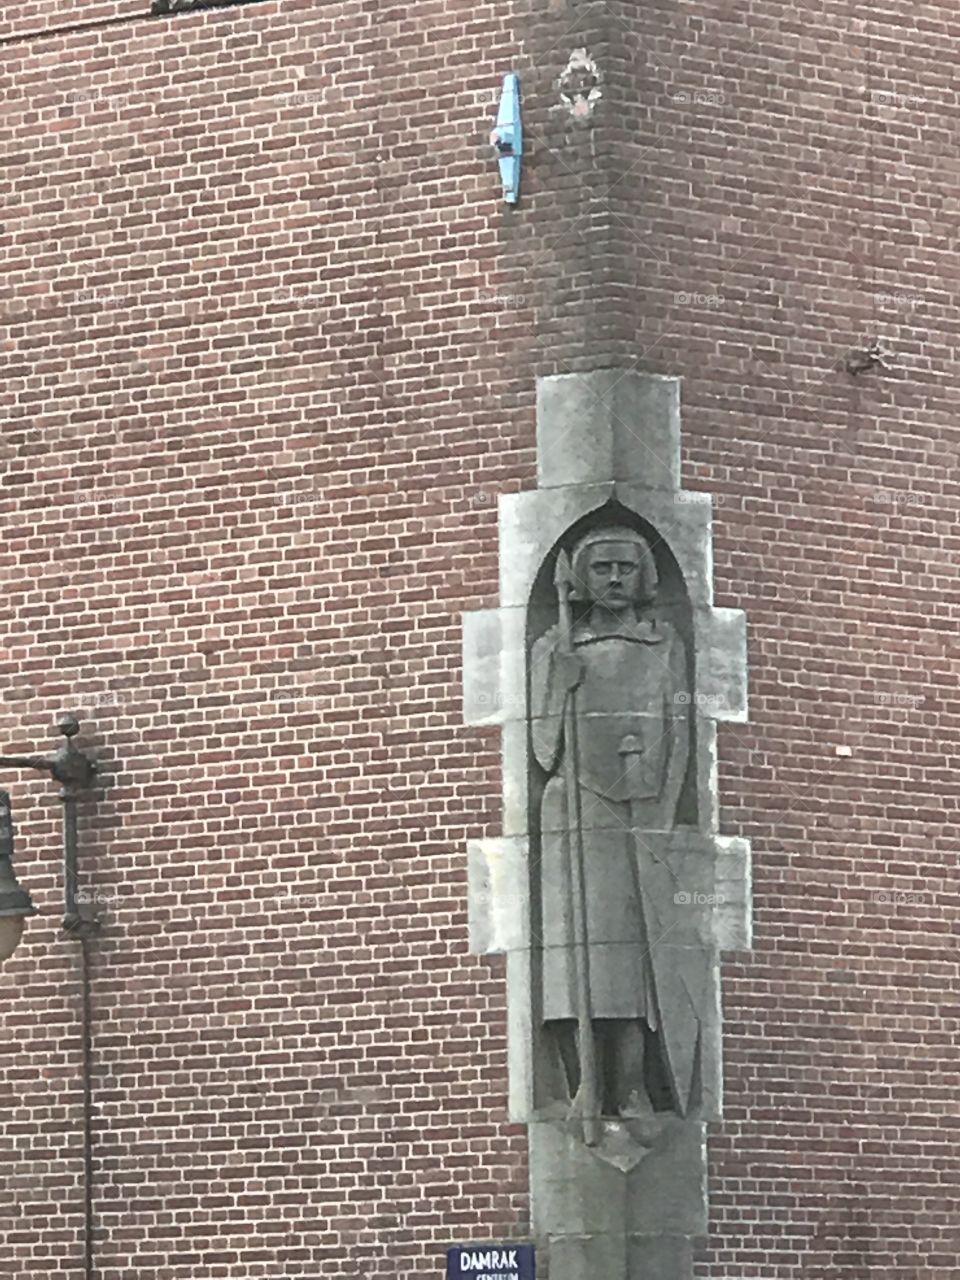 Corner
Building
Statue 
Catholic 
Art
